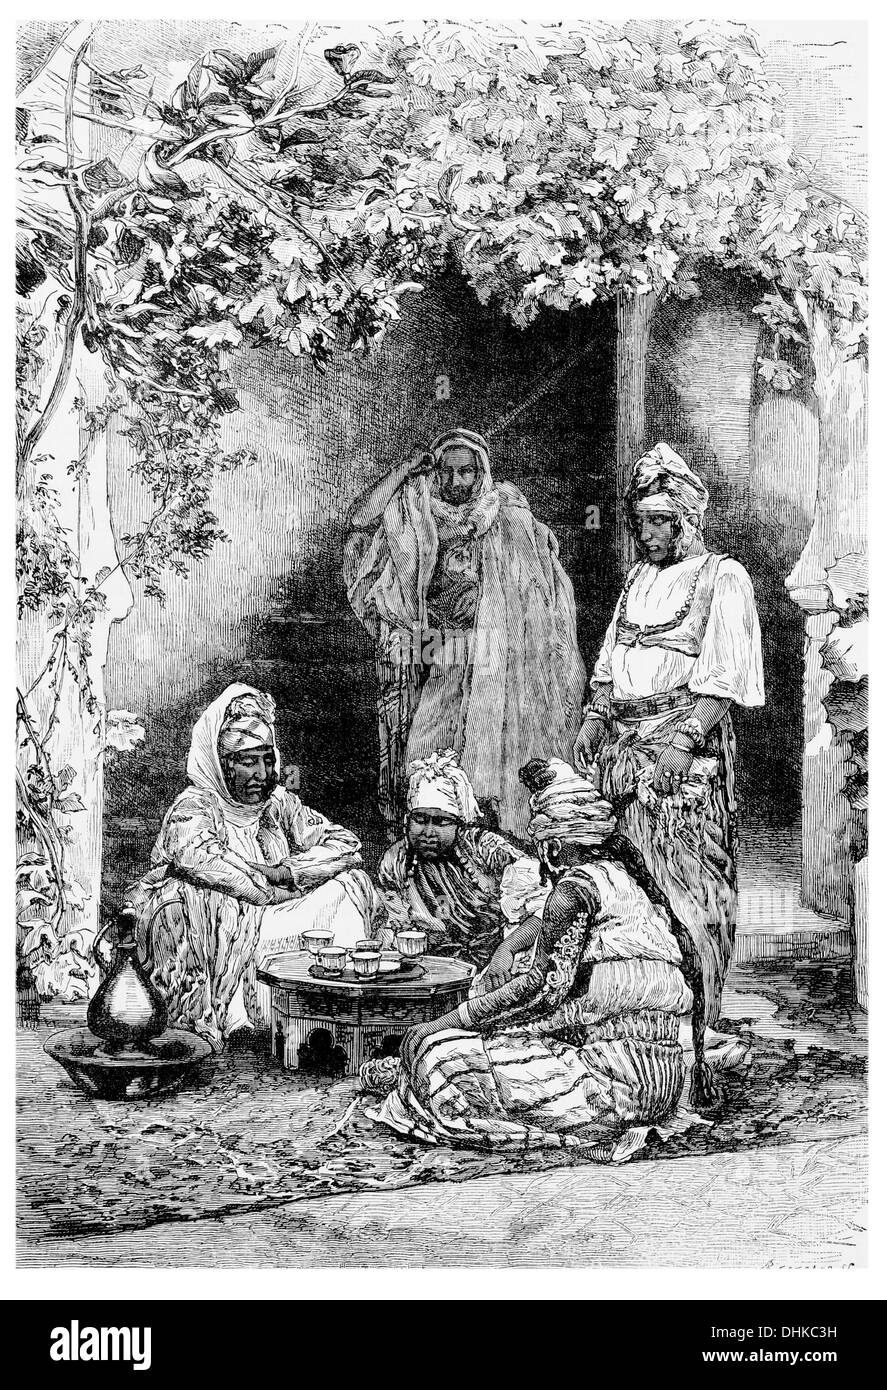 1888 famille arabe de Tlemcen, Tlemsen Tlemsan, ou Tilimsen. Banque D'Images